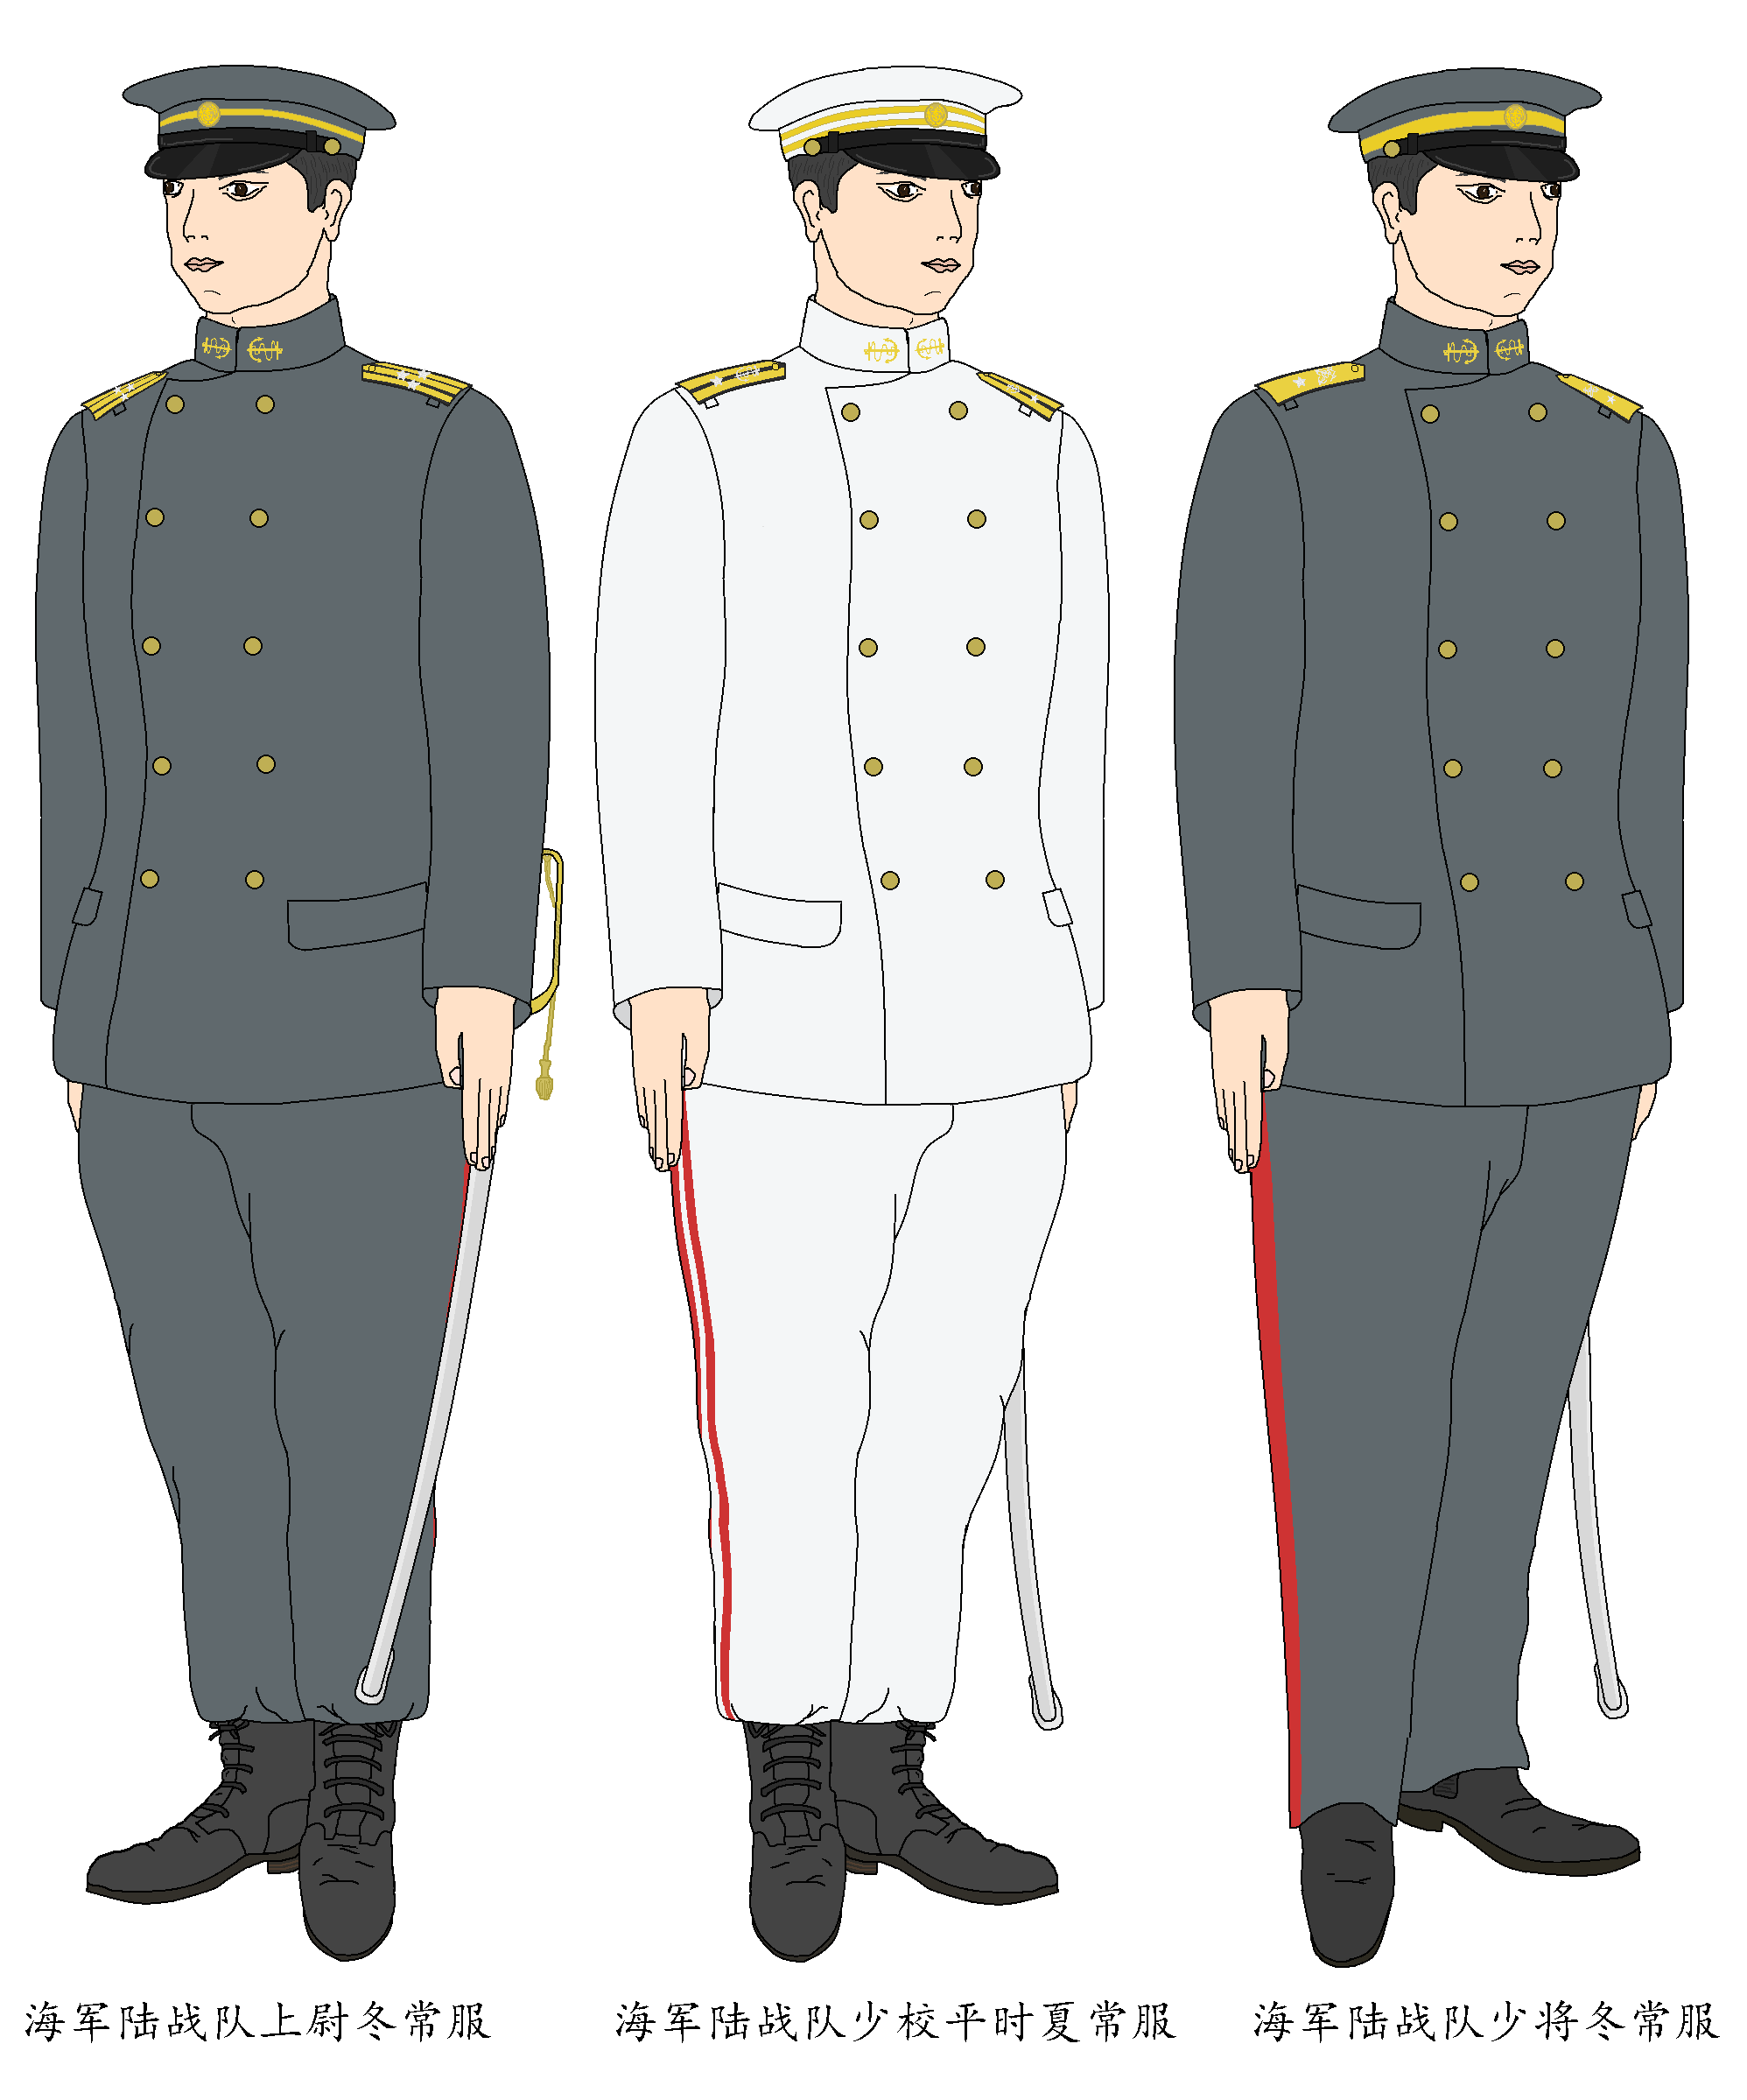 陆海军风格混合的陆战队军服